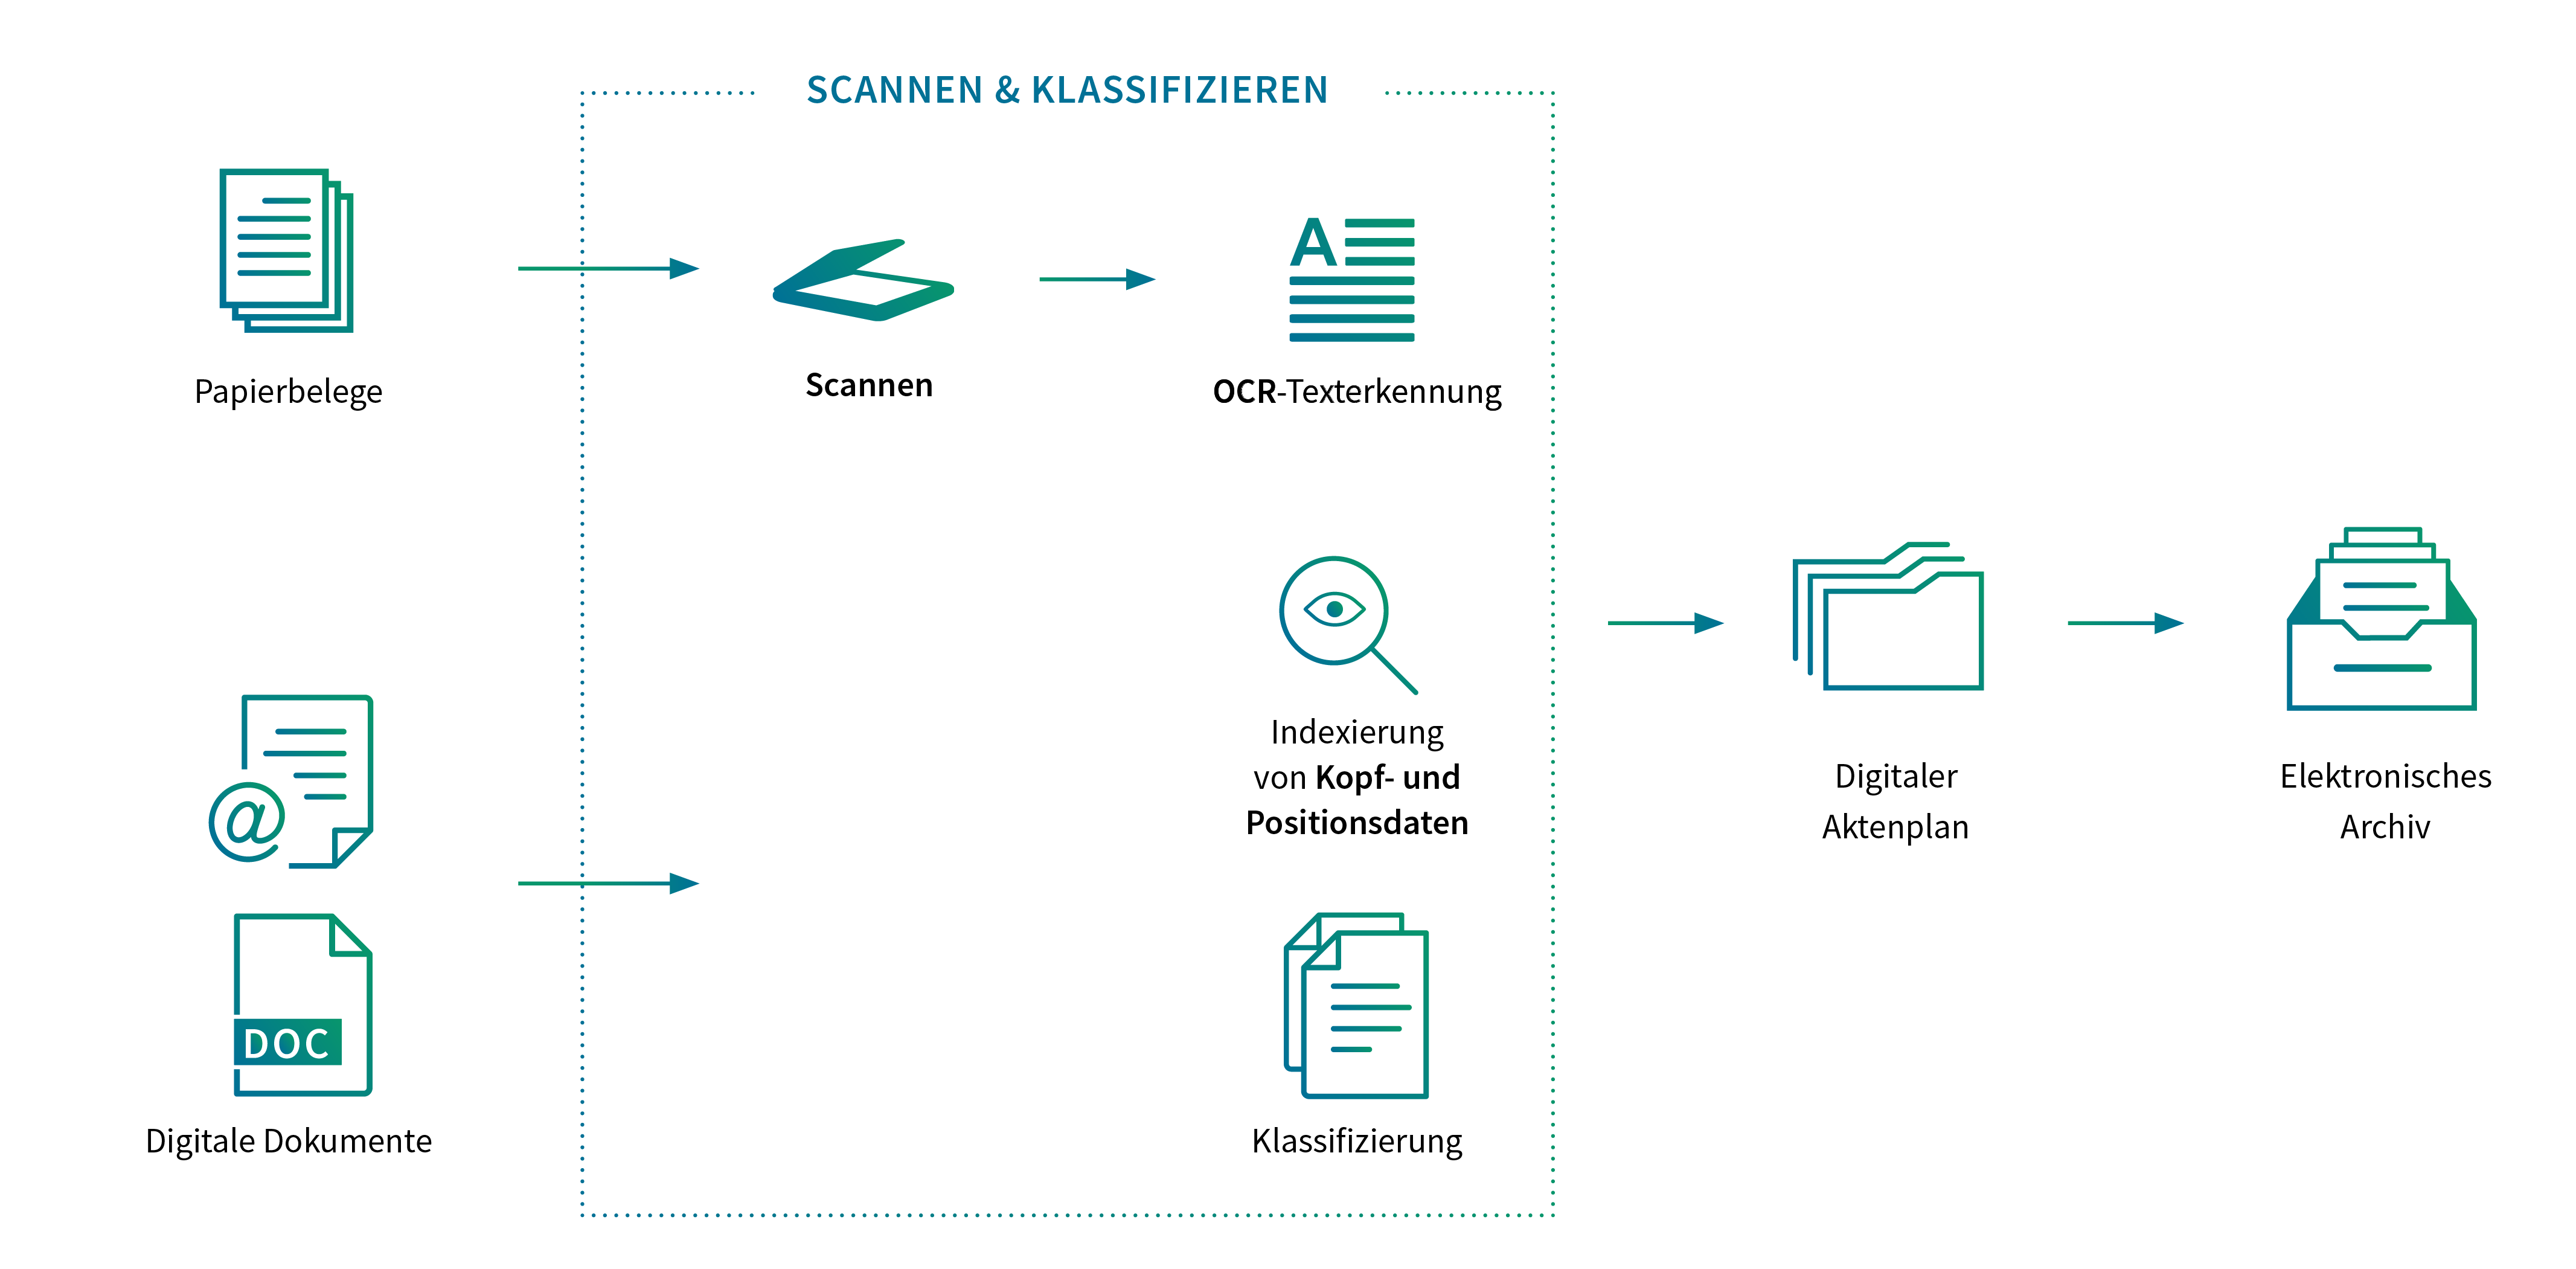 Grafik zur Abbildung wie Scannen und Klassifzieren im Rahmen von Dokumentenmanagement funktioniert, angefangen von Papierbelegen und digitalen Dokumenten über den Scanprozess und auslesen von Attributen bis Einordnung in den digitalen Aktenplan und Ablage im elektronischen Archiv